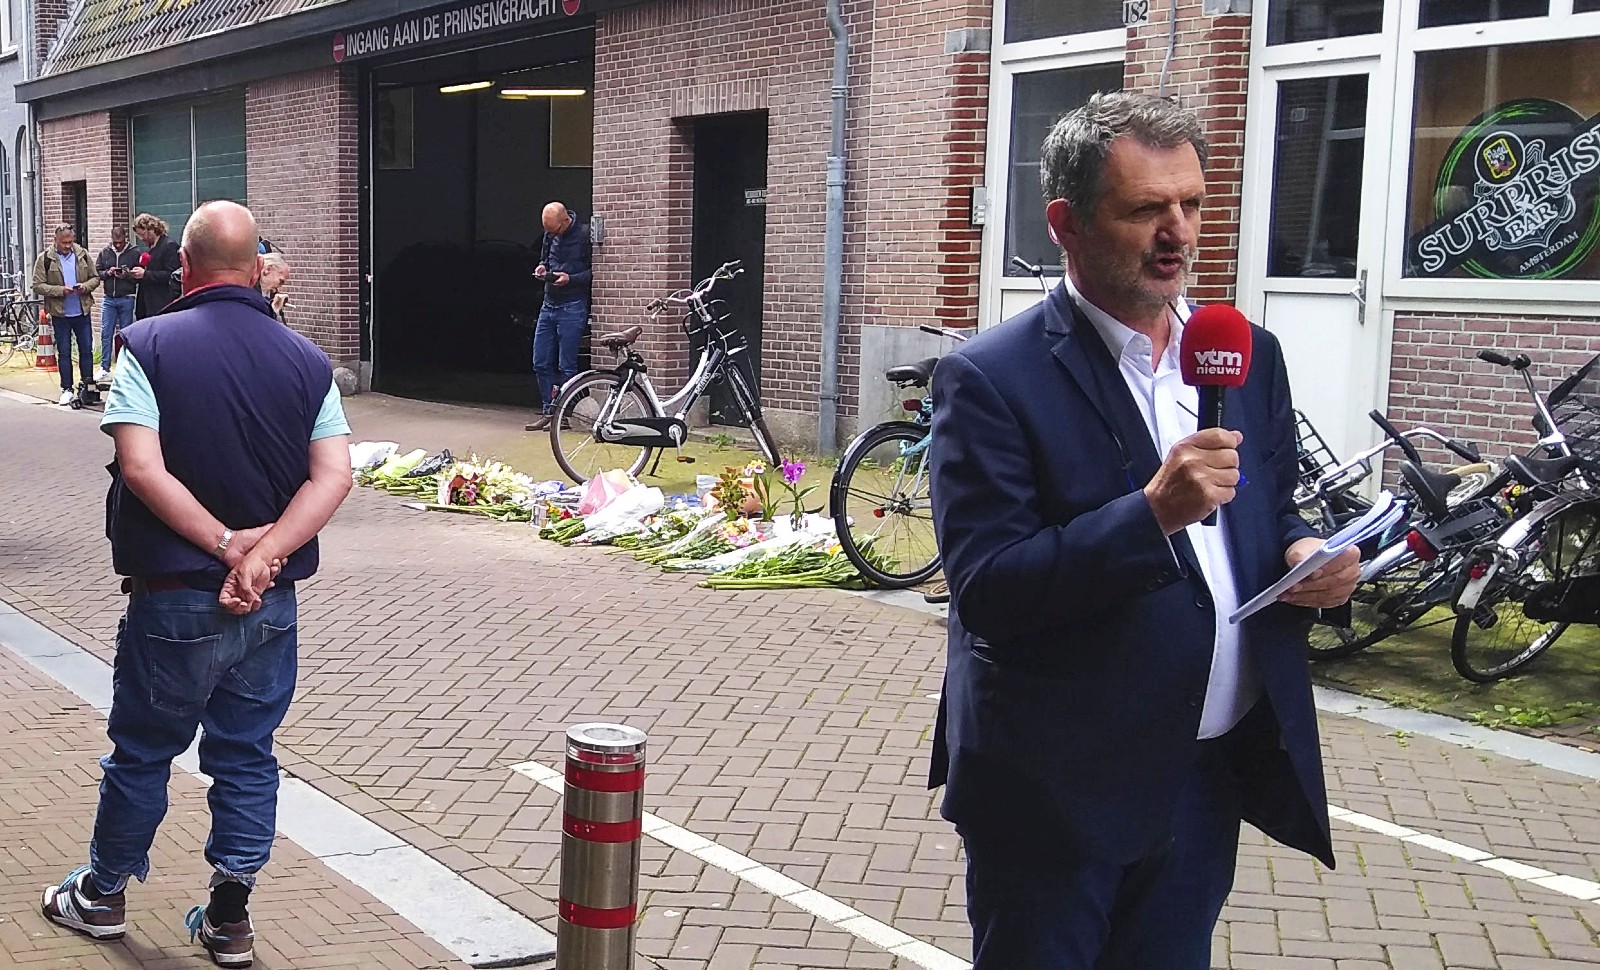 Qui est Peter R. de Vries, ce journaliste agressé aux Pays-Bas?